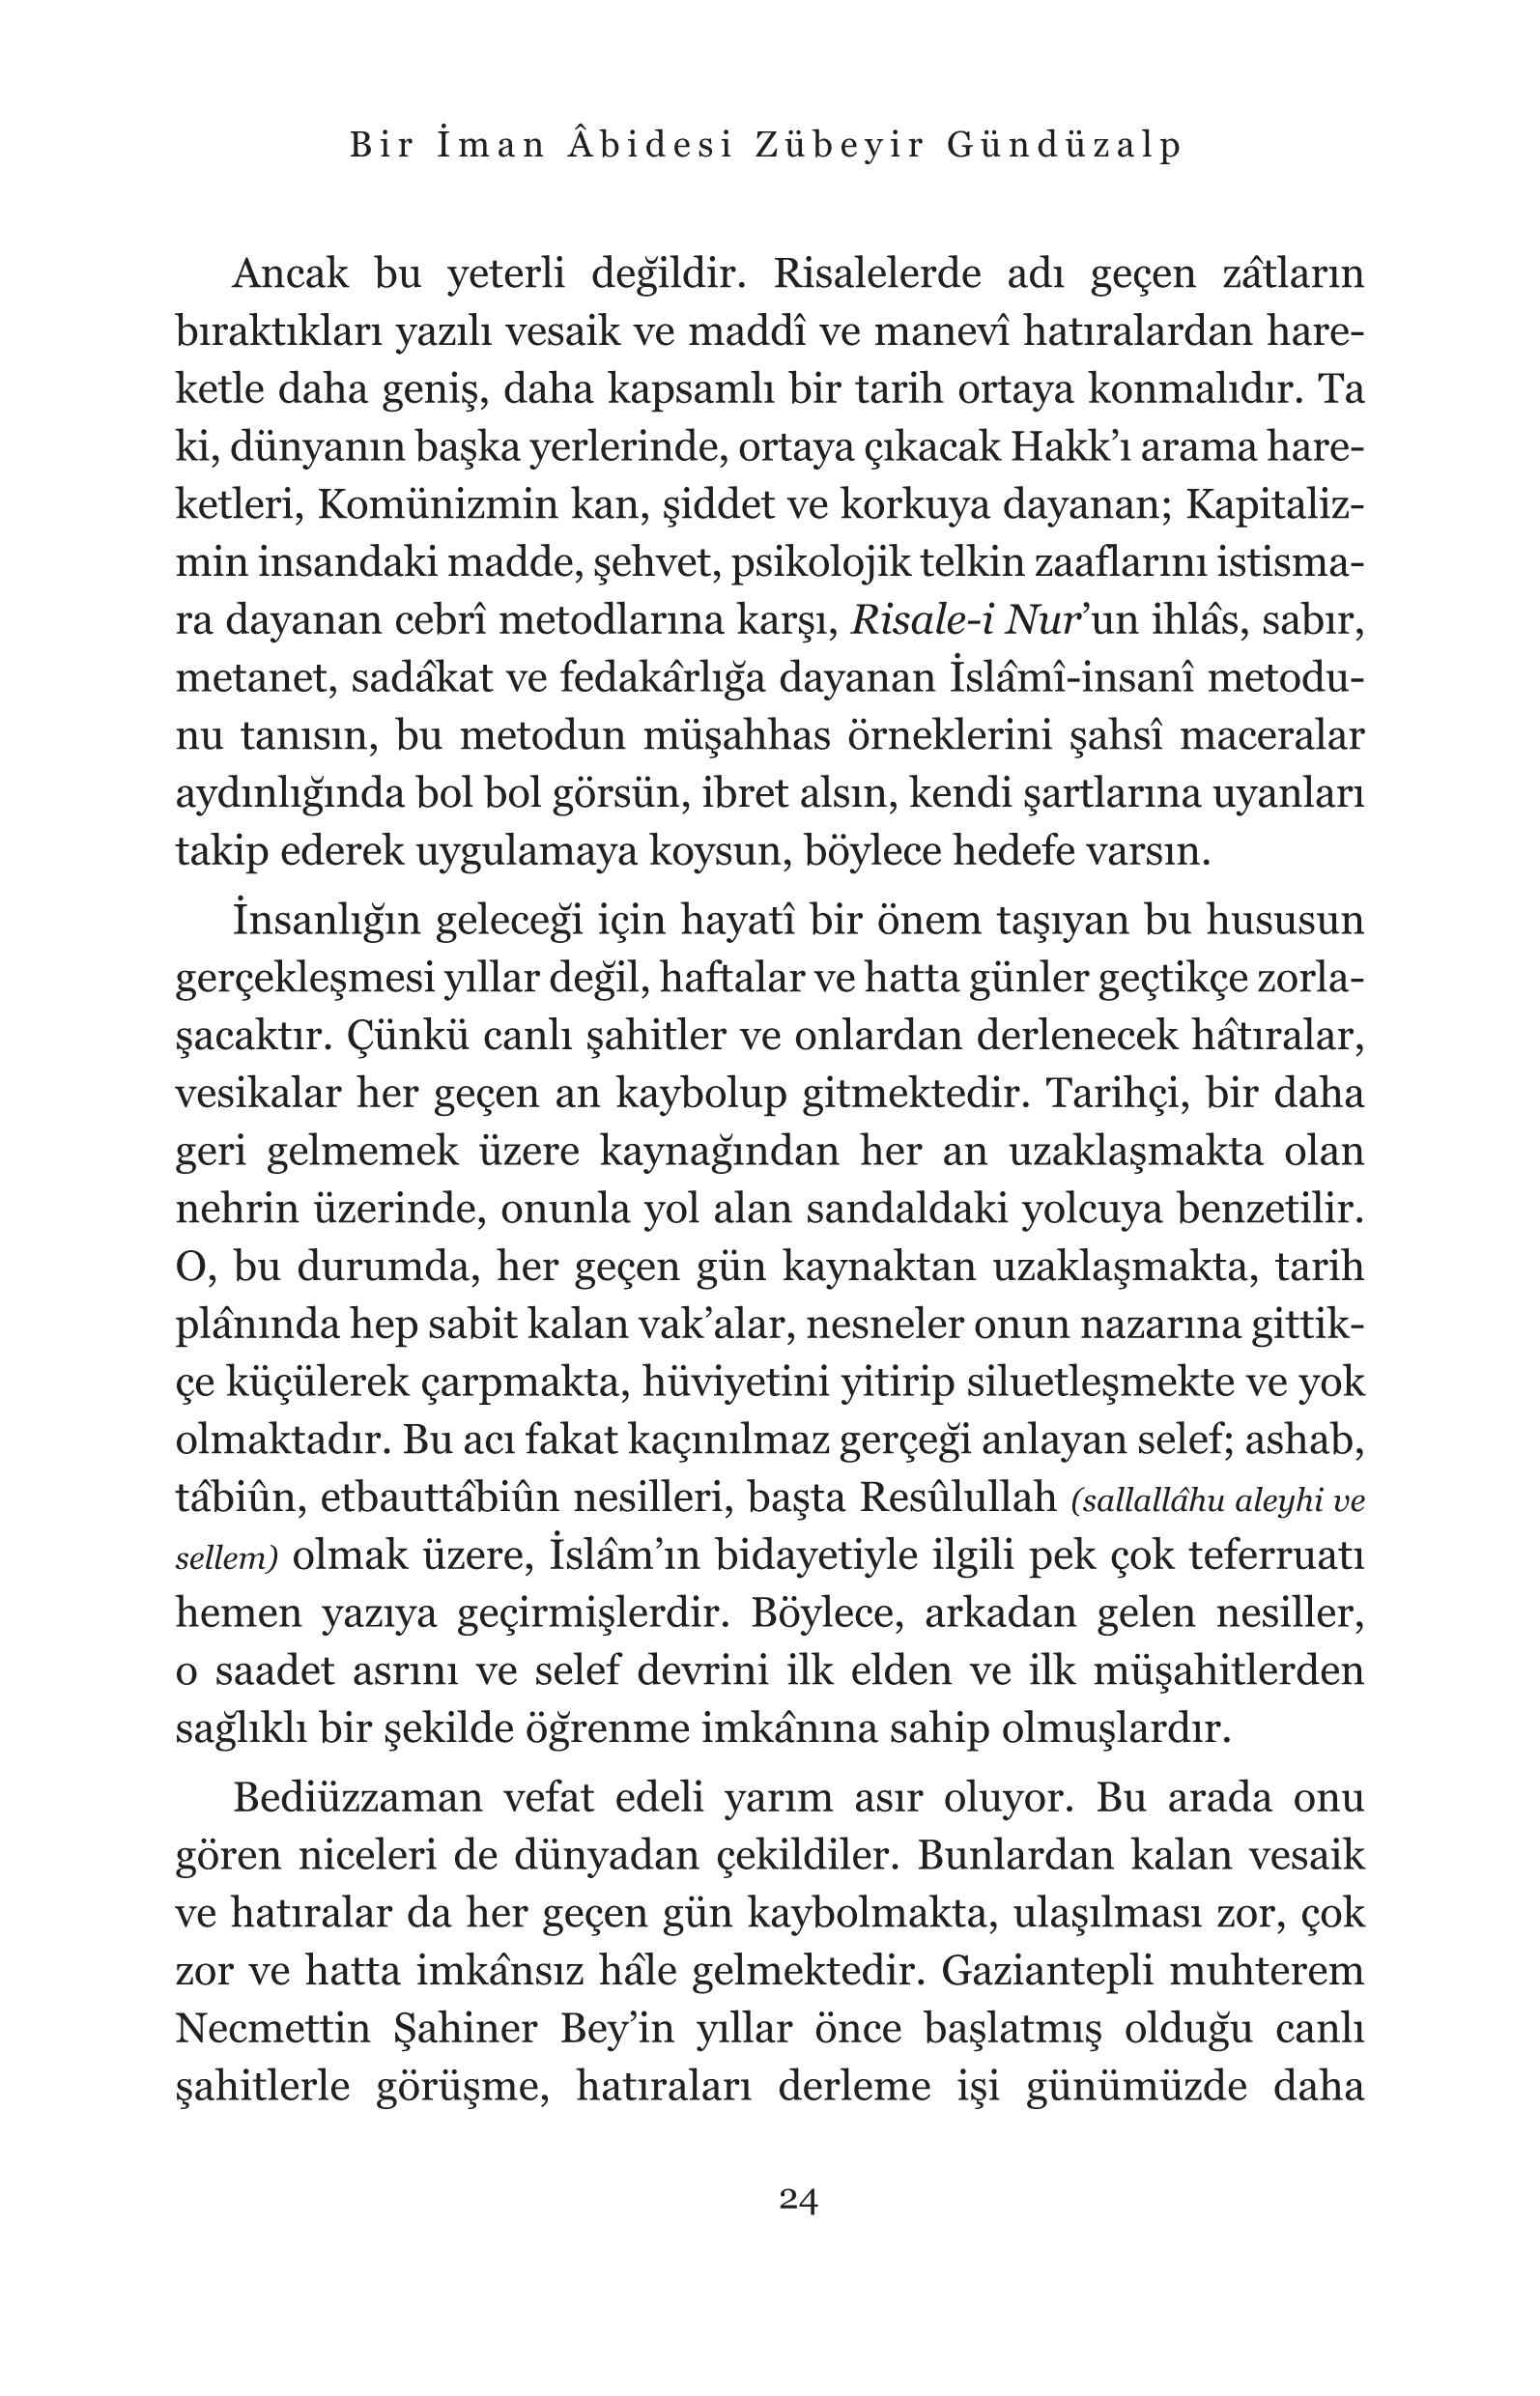 Ahmet Ozer - Kirklar Serisi-14 - Bir iman Abidesi Zübeyir Gundüzalp - IsikYayinlari.pdf, 430-Sayfa 